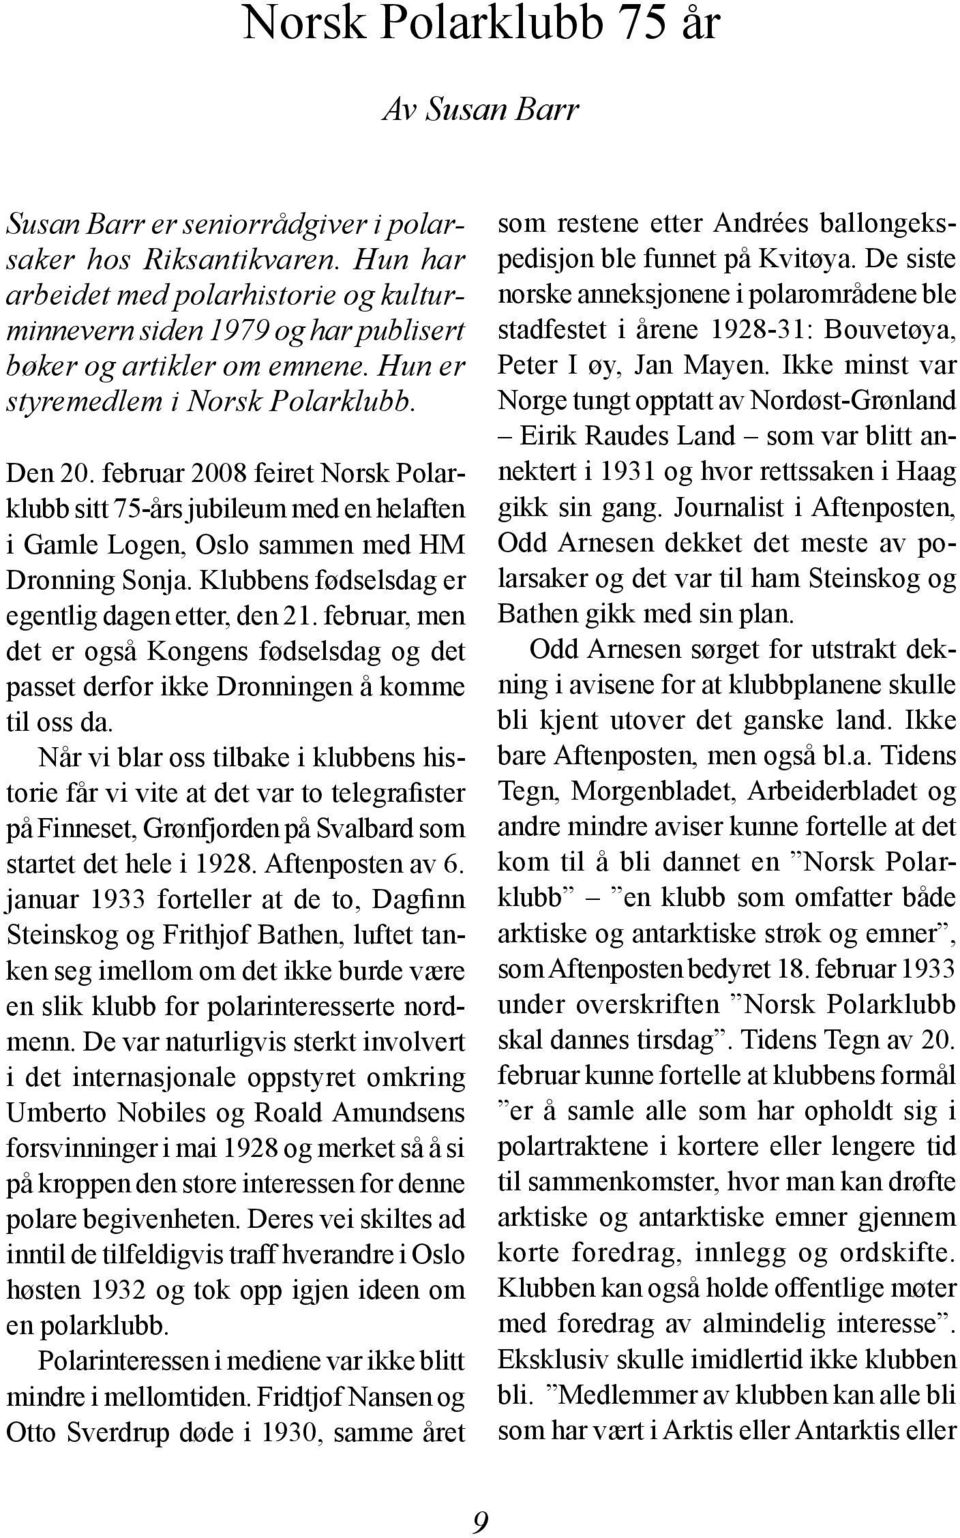 februar 2008 feiret Norsk Polarklubb sitt 75-års jubileum med en helaften i Gamle Logen, Oslo sammen med HM Dronning Sonja. Klubbens fødselsdag er egentlig dagen etter, den 21.